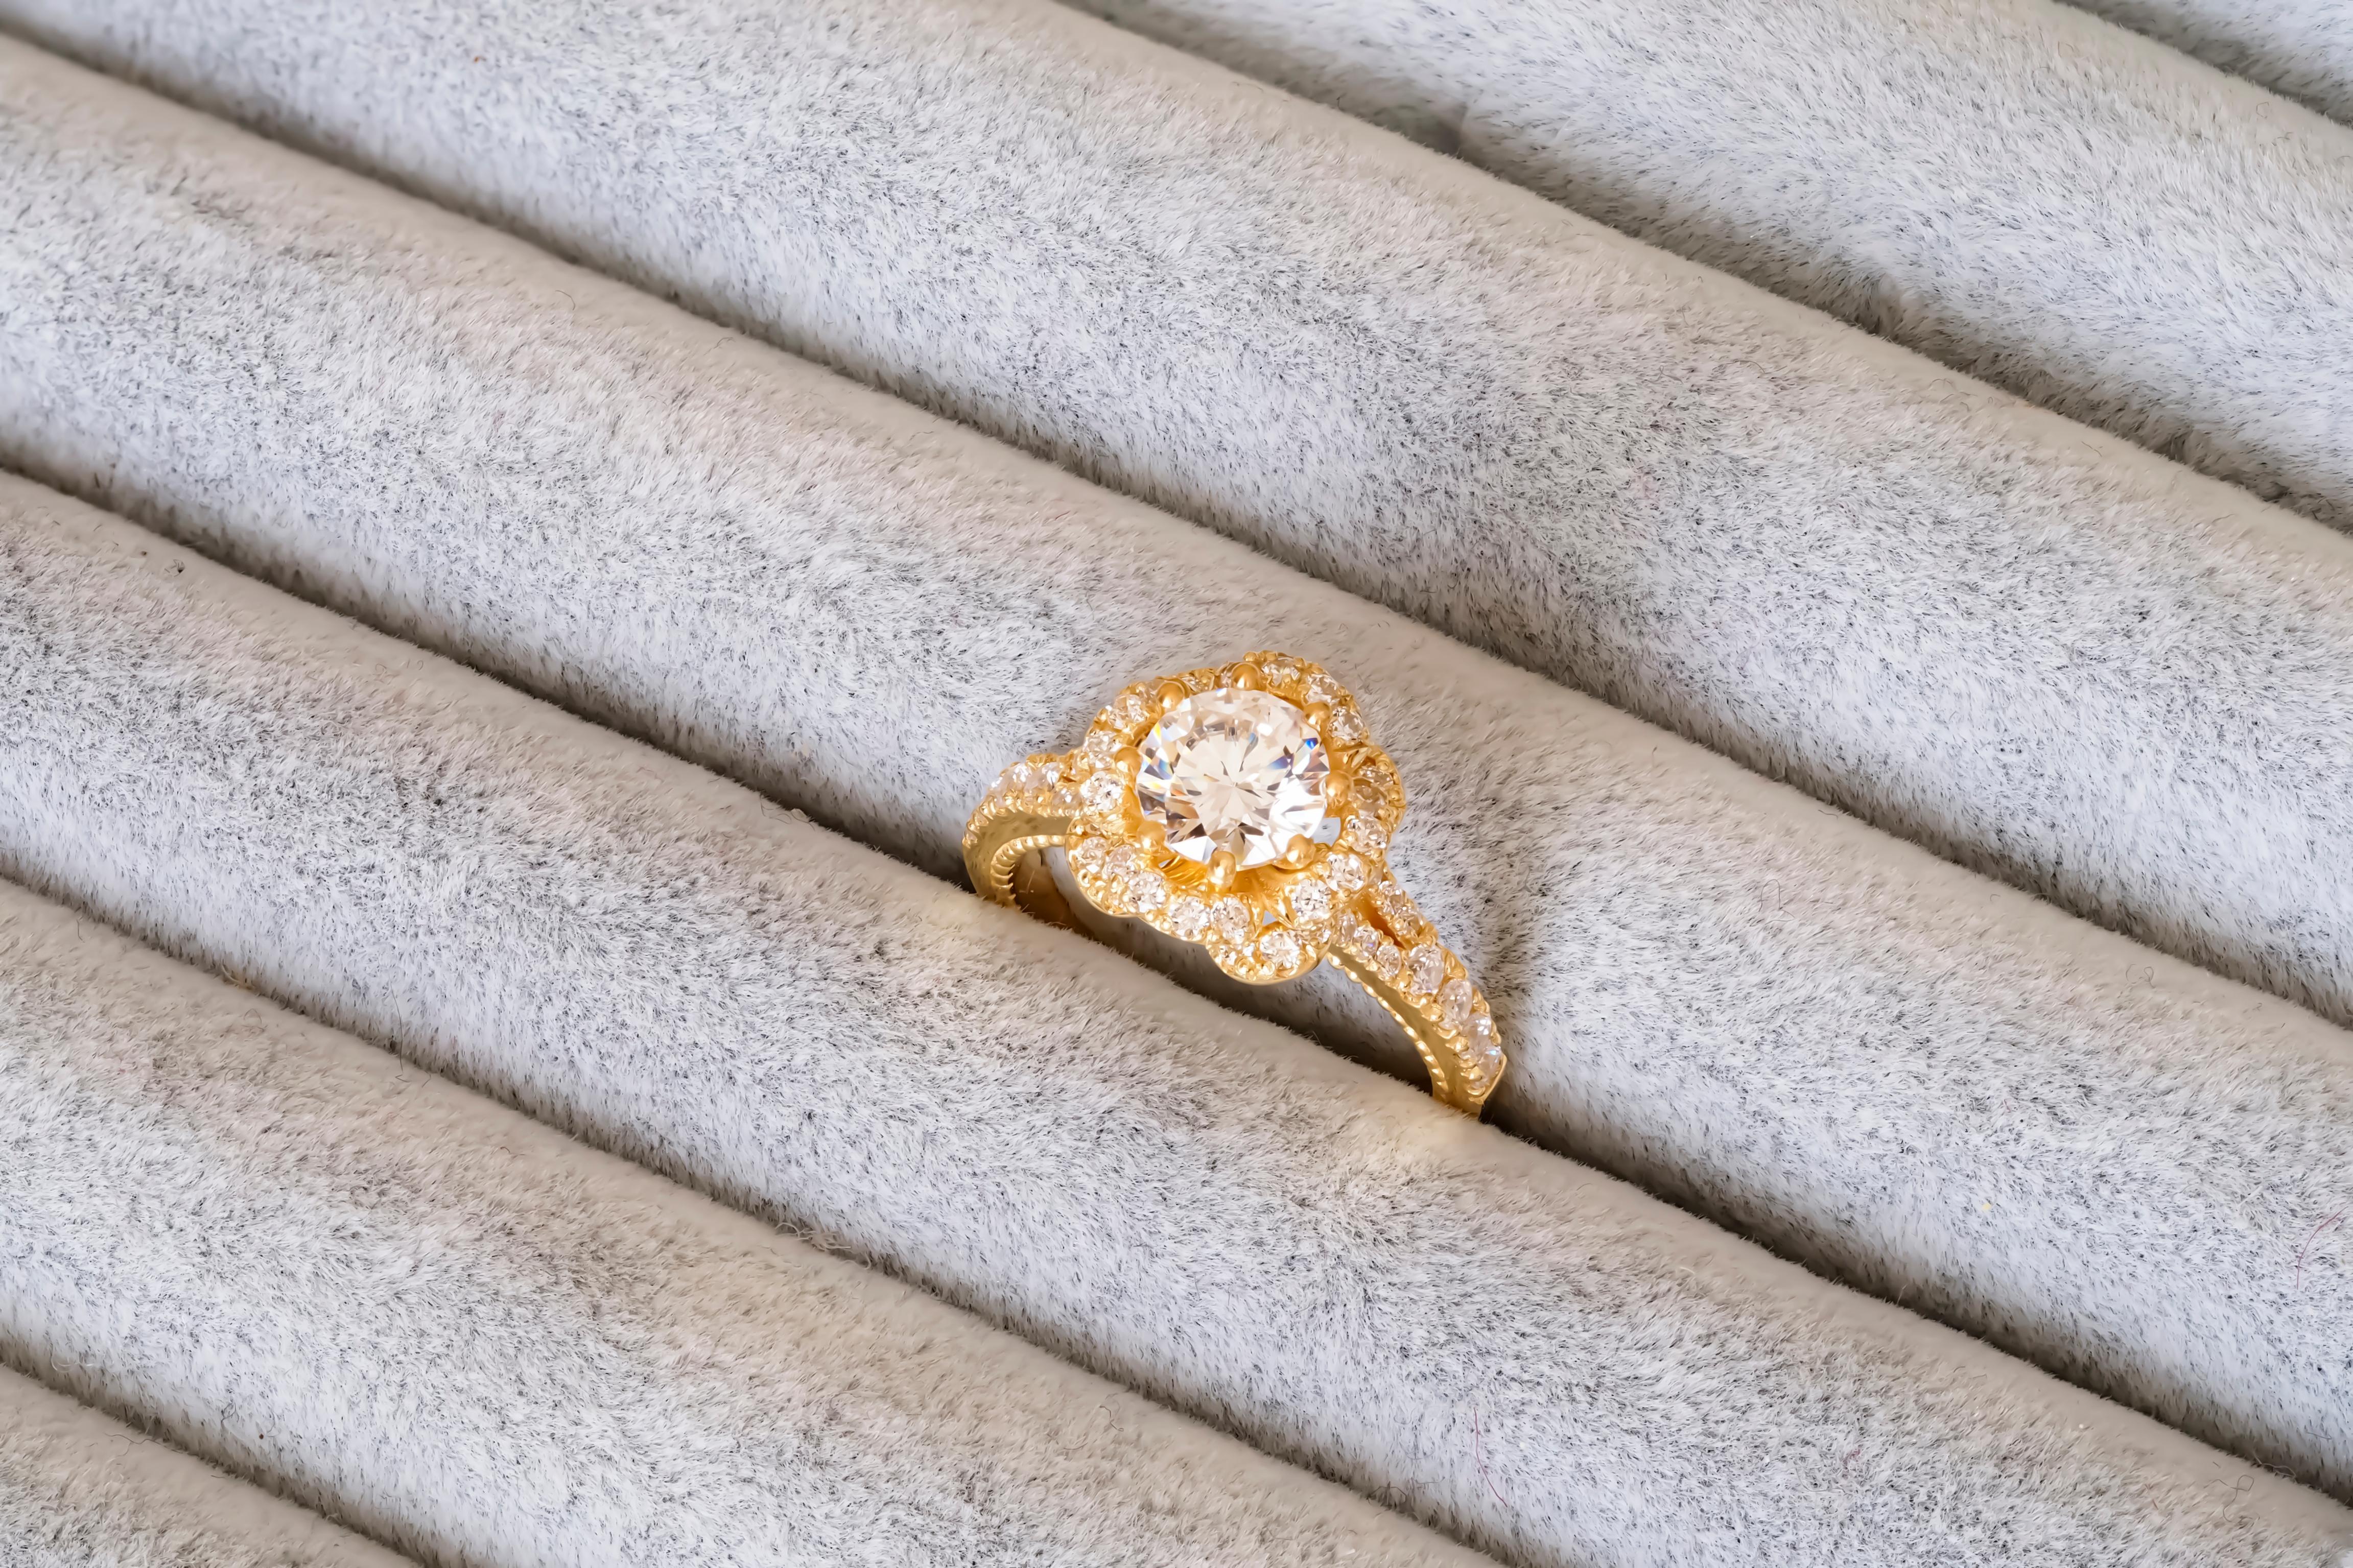 For Sale:  Moissanite 14k gold engagement ring  9